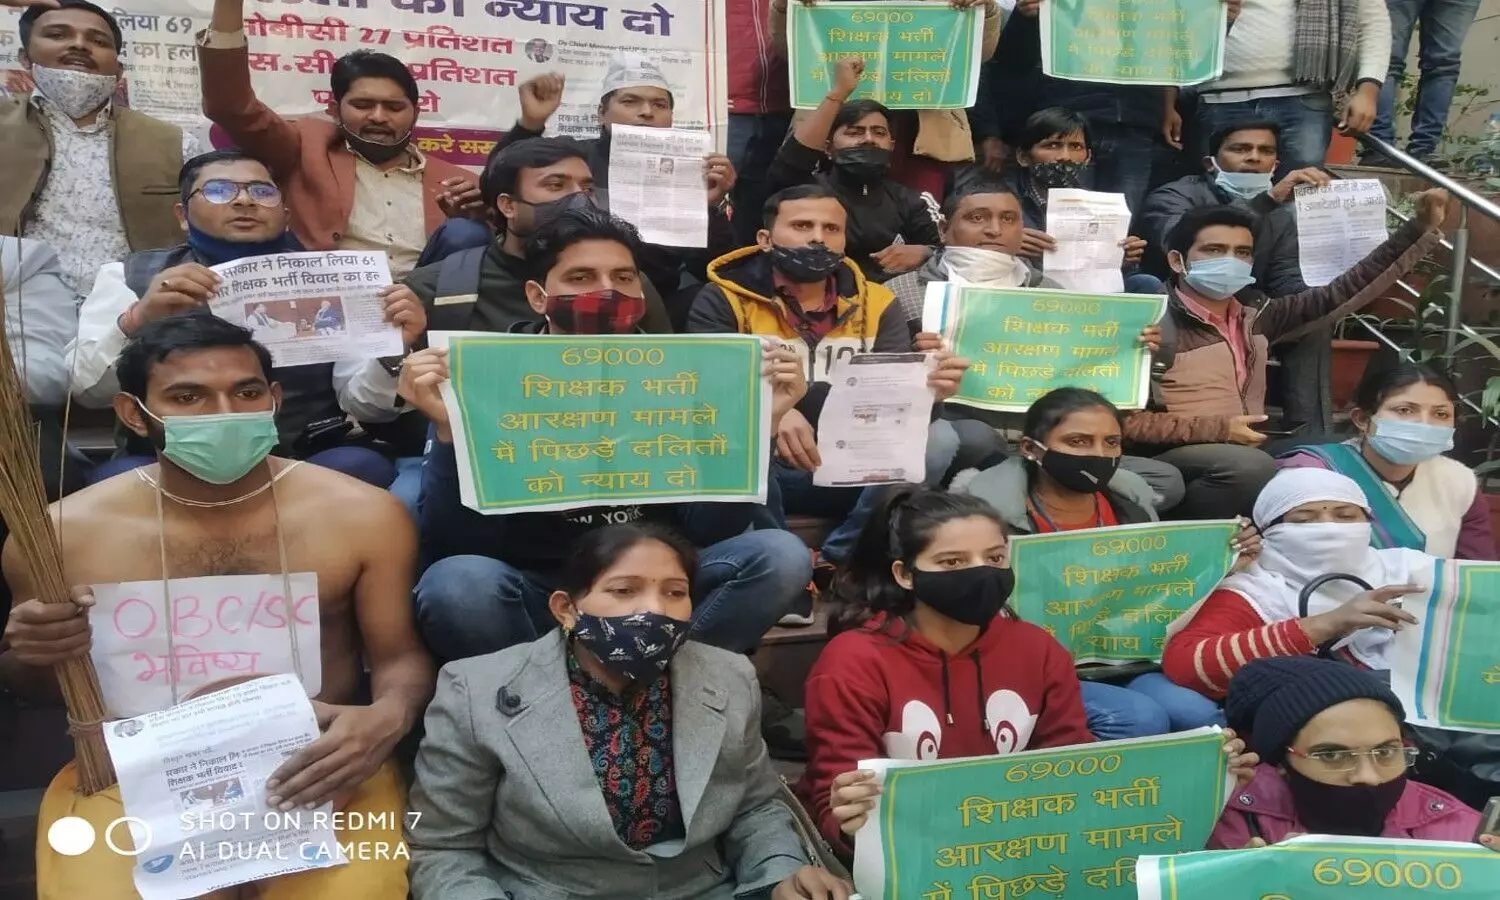 Delhi: 69000 शिक्षक भर्ती अभ्यर्थियों का हल्ला बोल, राष्ट्रीय पिछड़ा आयोग के कार्यालय में की तालाबंदी